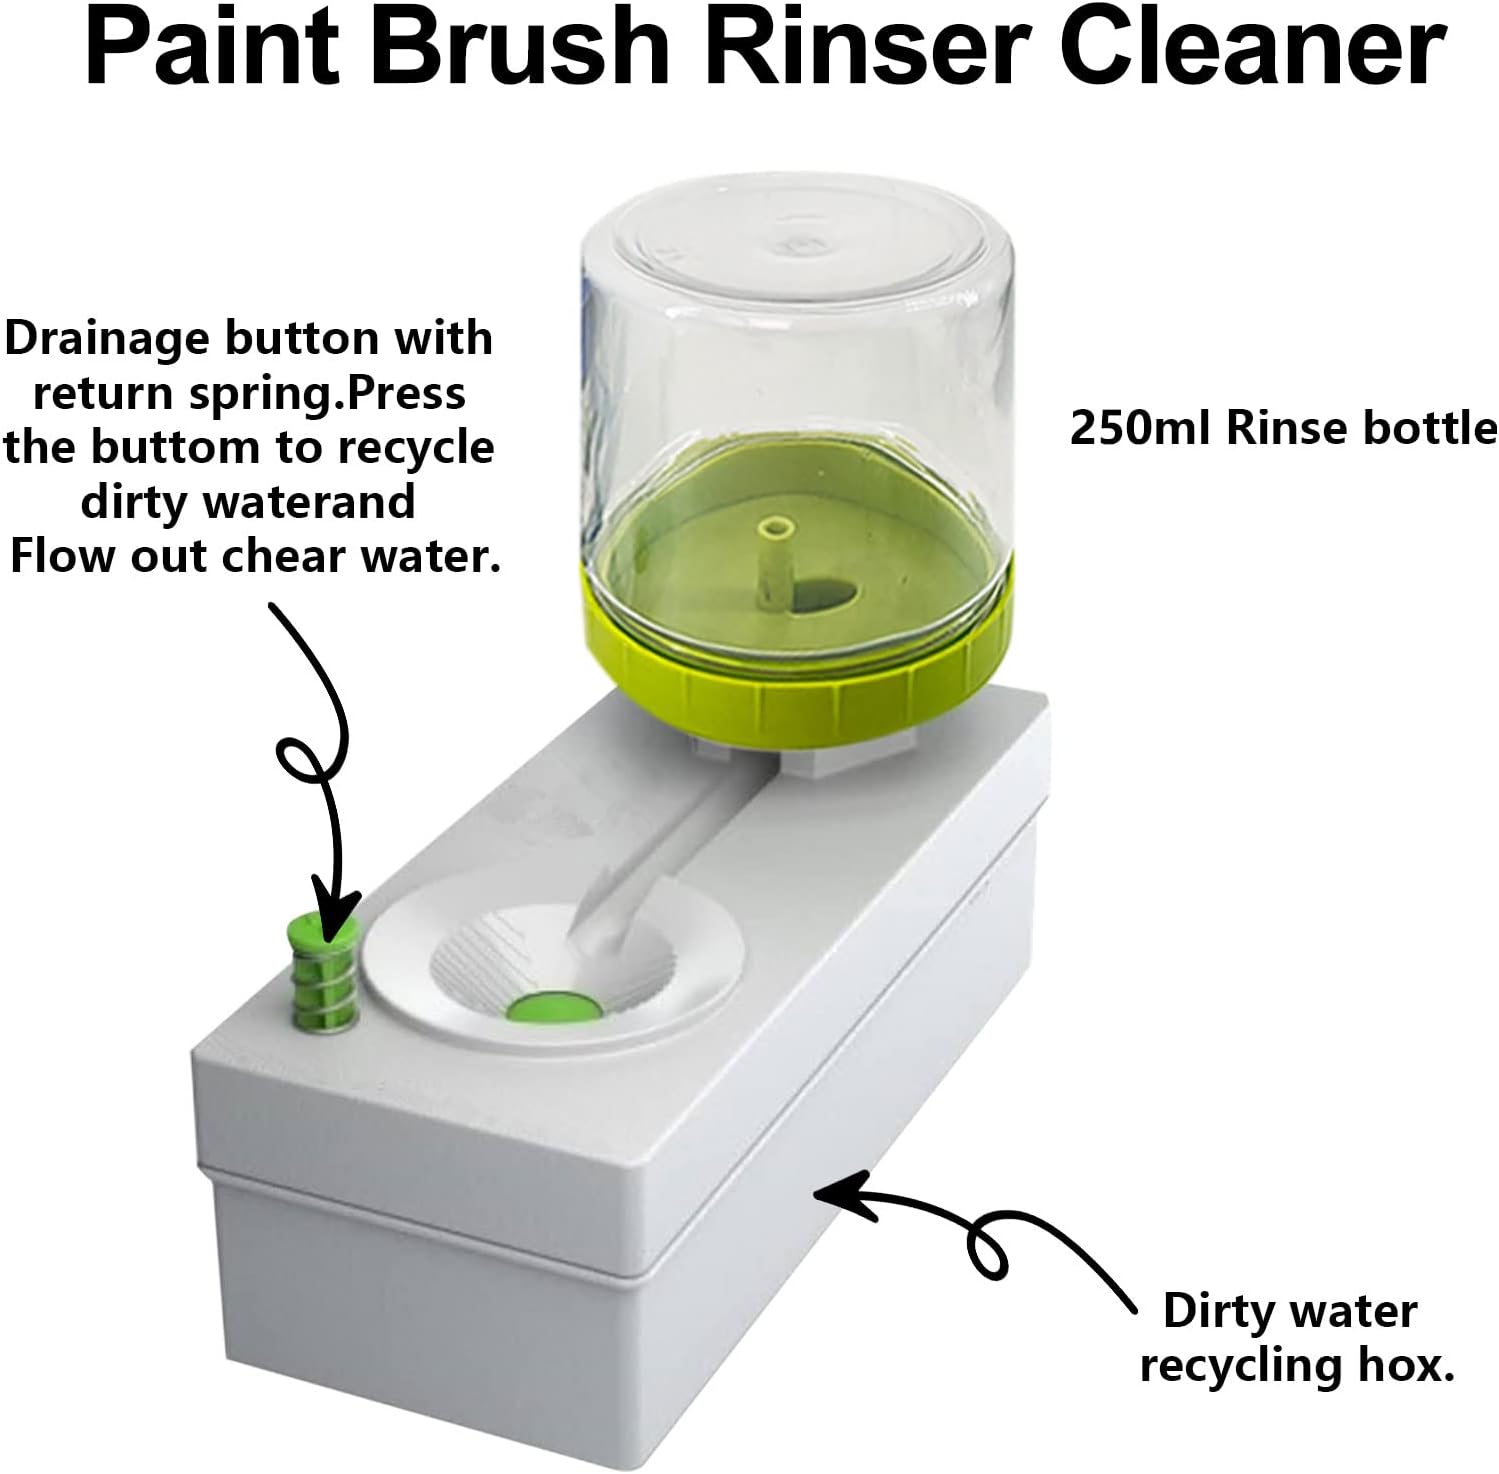 Paint Brush Cleaner, Paint Brush Washer, Brush Rinser with 10 Brushes,  Paint Brush Rinser with Drain, Multifunctional Paint Brush Cleaner Tool,  Water